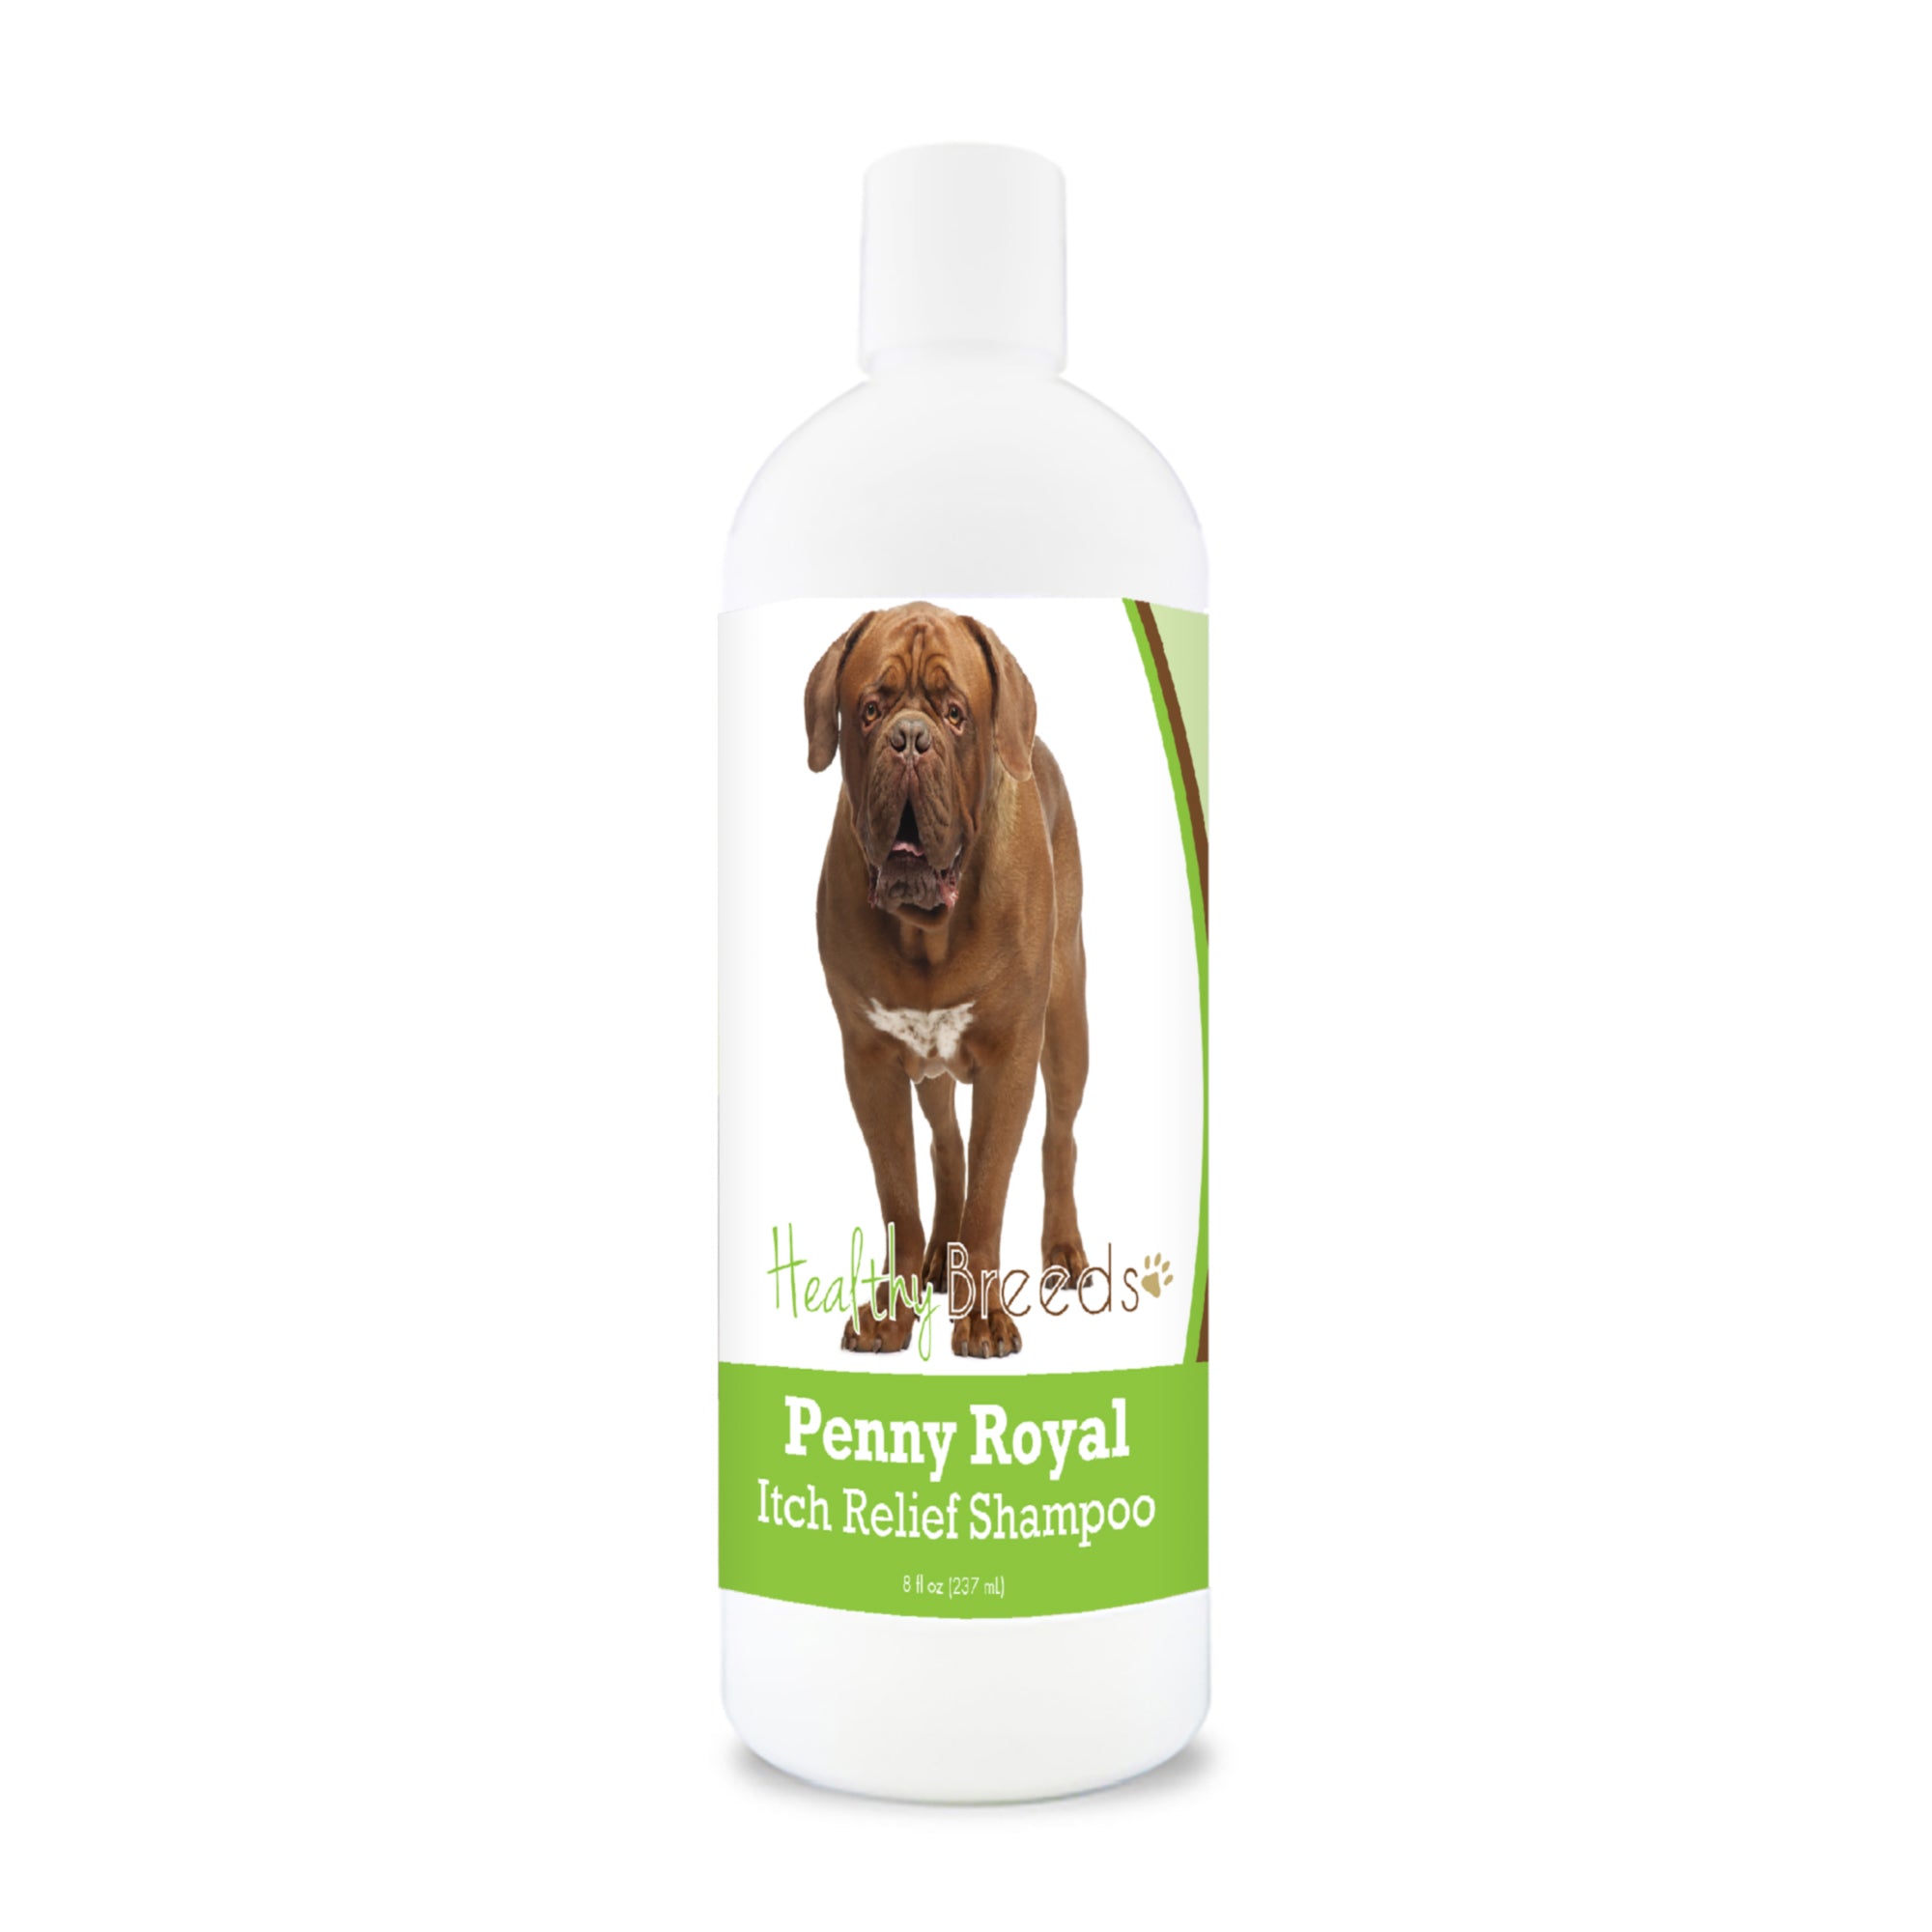 Dogue de Bordeaux Penny Royal Itch Relief Shampoo 8 oz